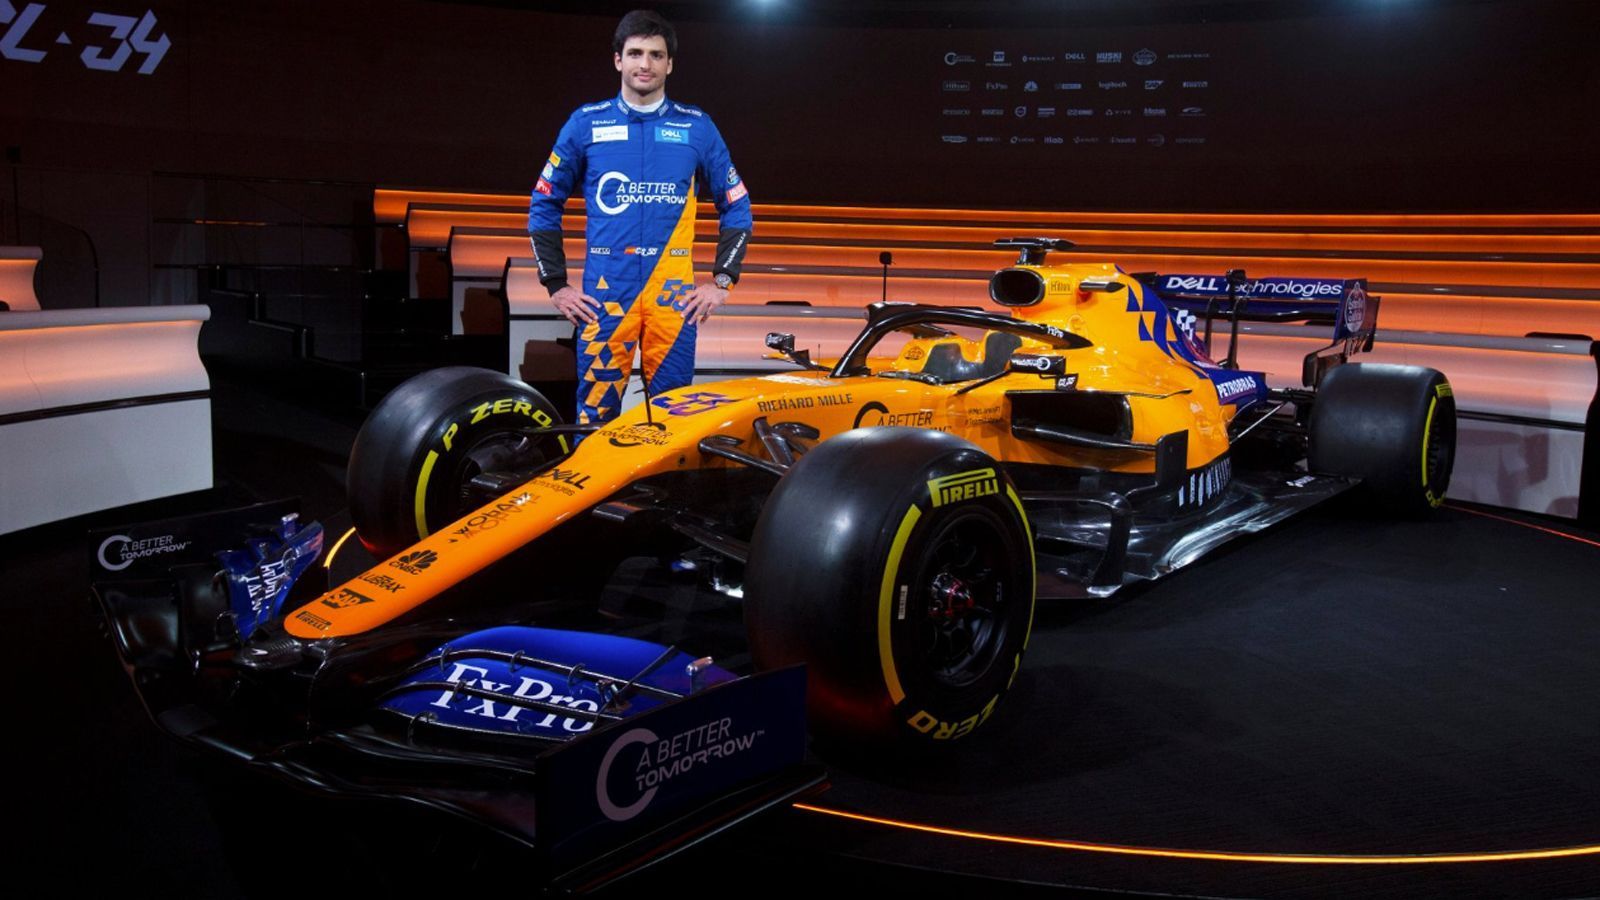 
                <strong>Formel-1-Autos 2019: McLaren F1 Team</strong><br>
                Mit dem MCL34 geht McLaren in die Saison 2019. Am Donnerstag präsentieren die Fahrer Carlos Sainz (Bild) und Lando Norris den neuen Boliden. Farblich verändert sich der Renner mit dem neuen Blau statt Schwarz. Hinzu kommt eine Kampfansage an die Konkurrenz: #fearlesslyforward - furchtlos vorwärts!
              